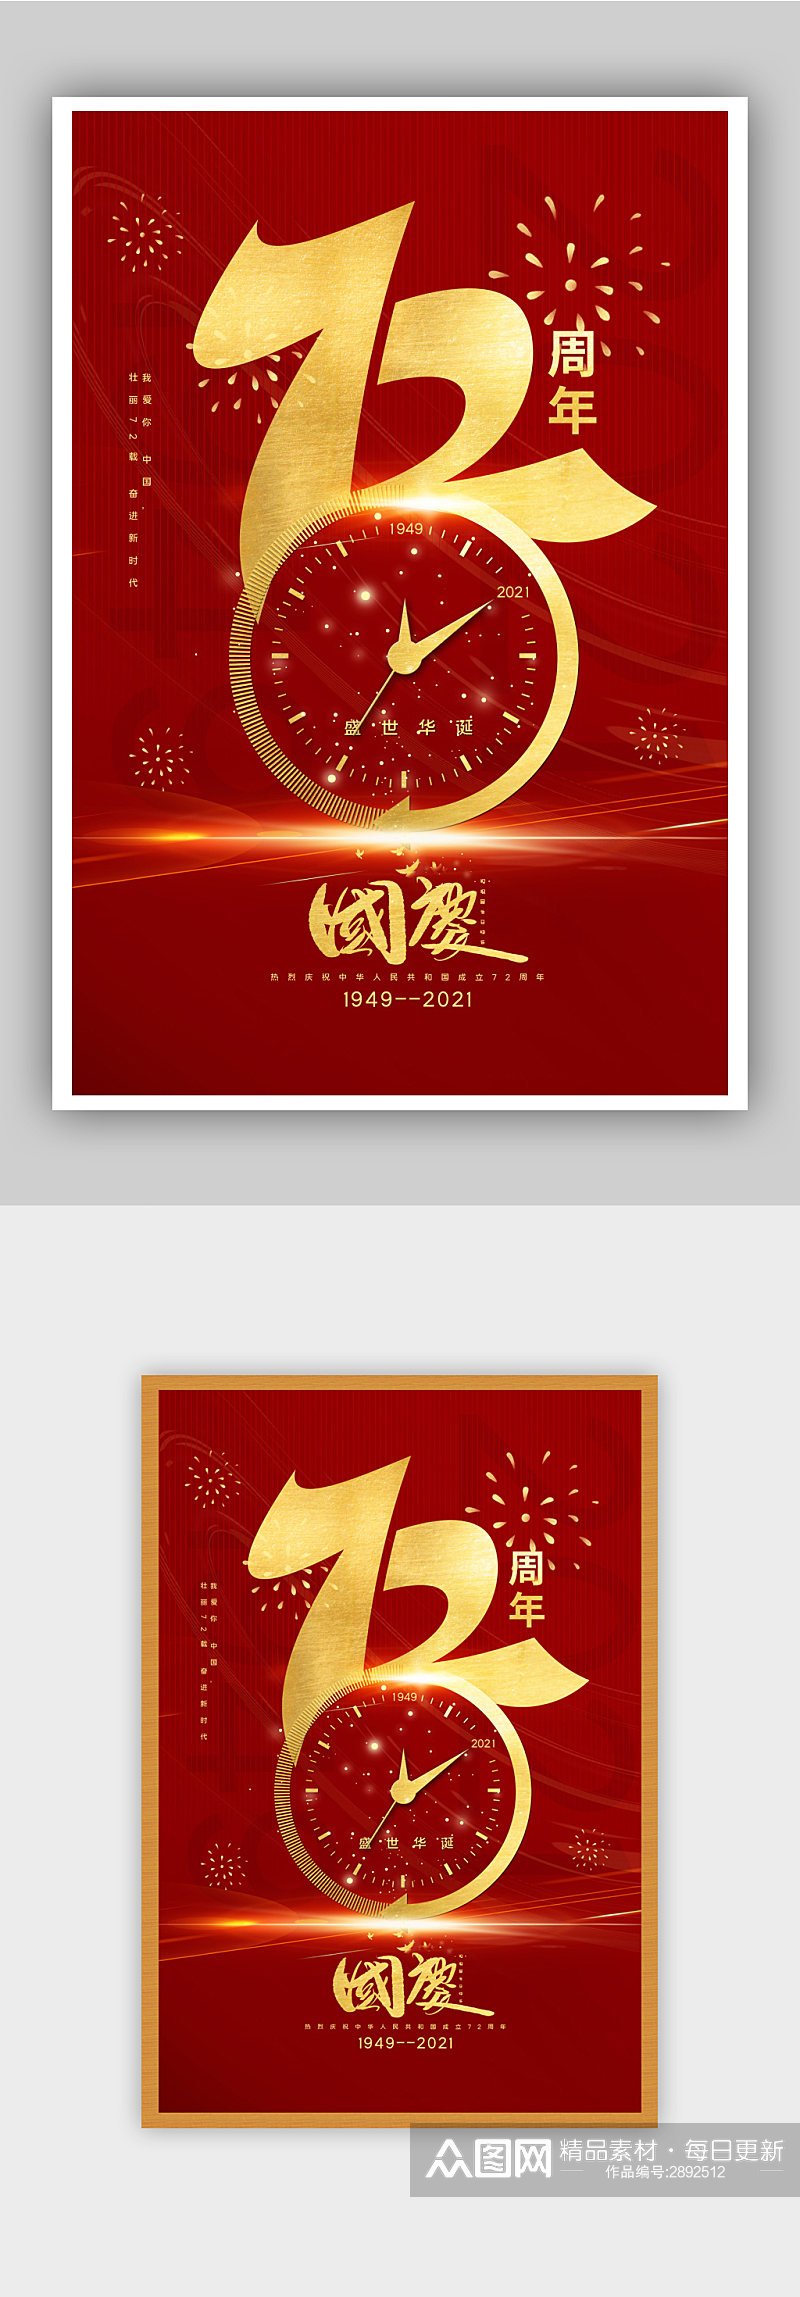 红金大气建国72周年国庆节主题海报素材